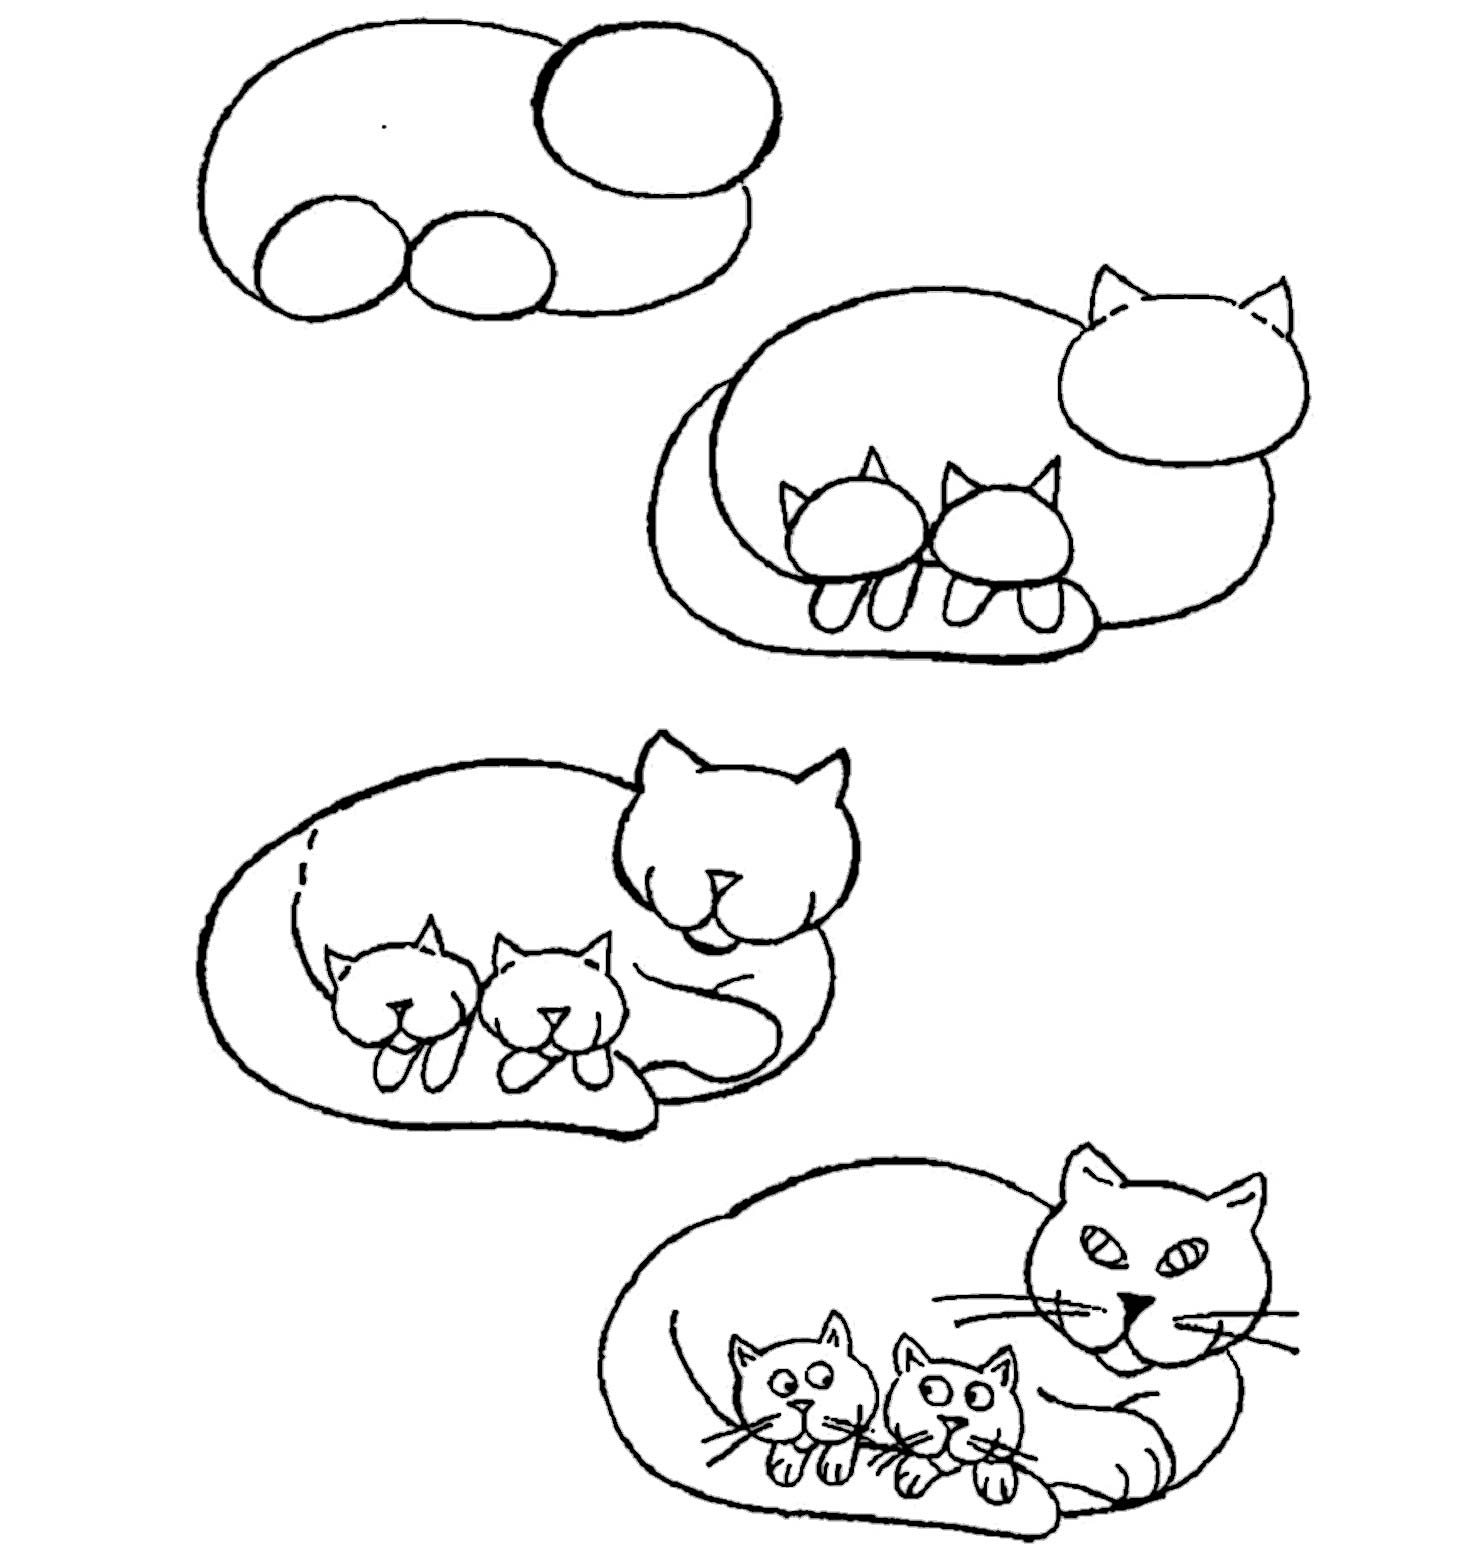 как нарисовать лежащую кошку с котятами фото